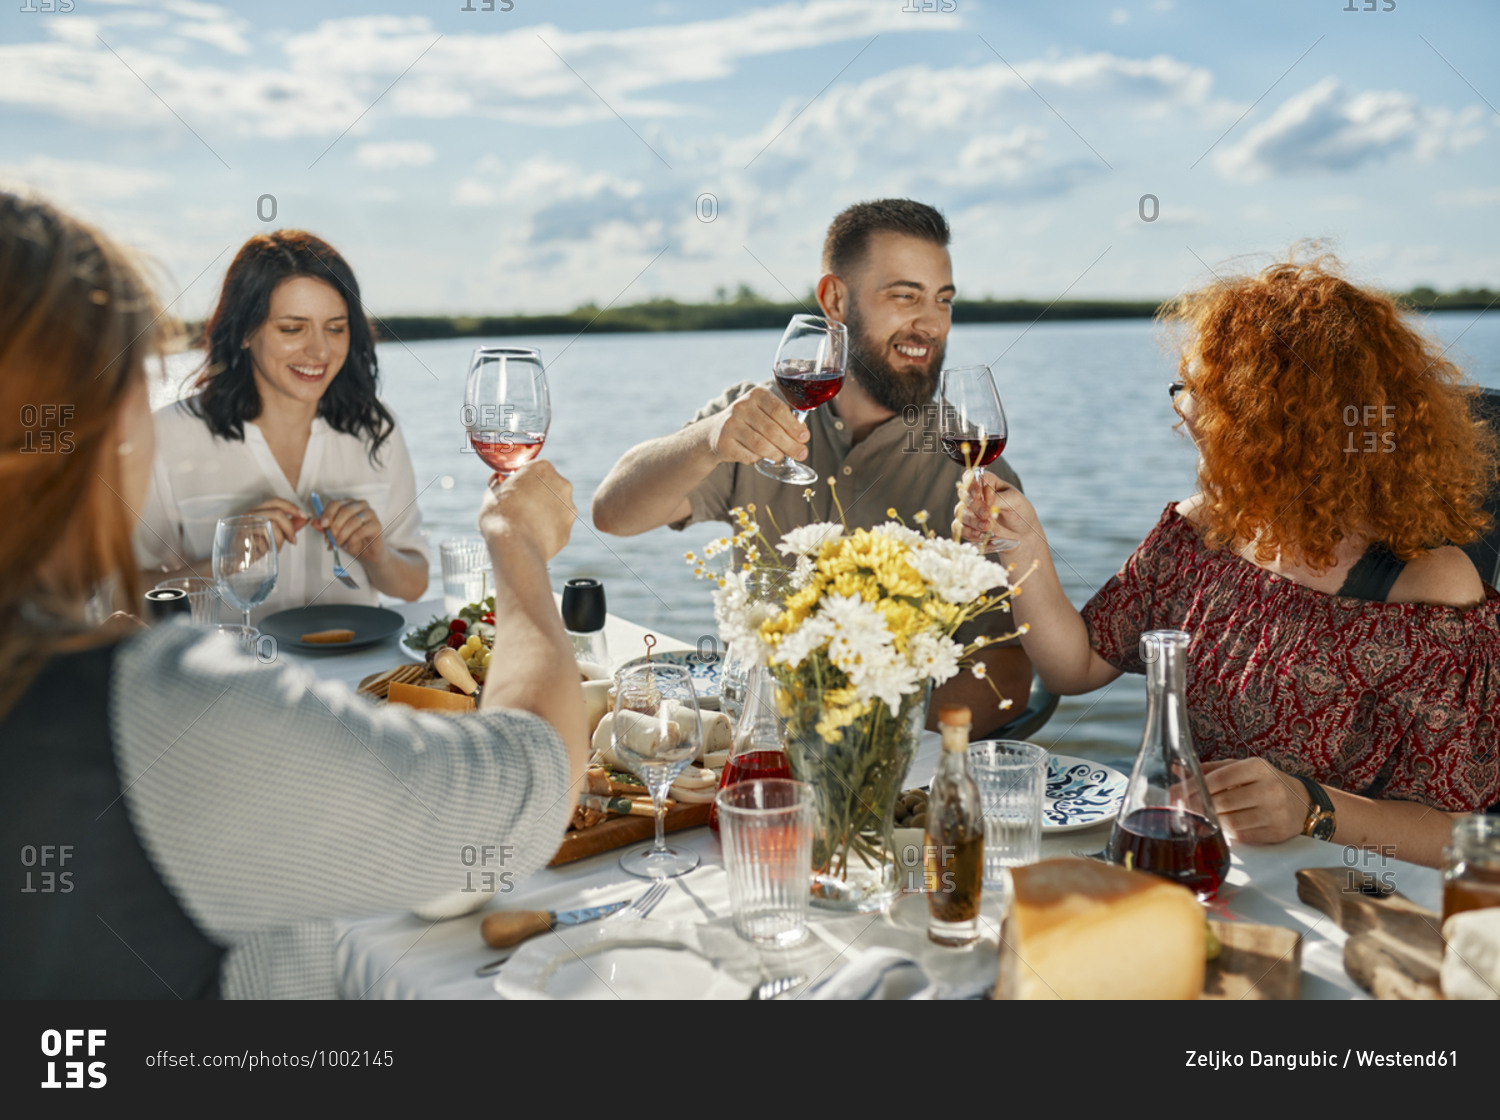 Friends having dinner at a lake raising wine glasses